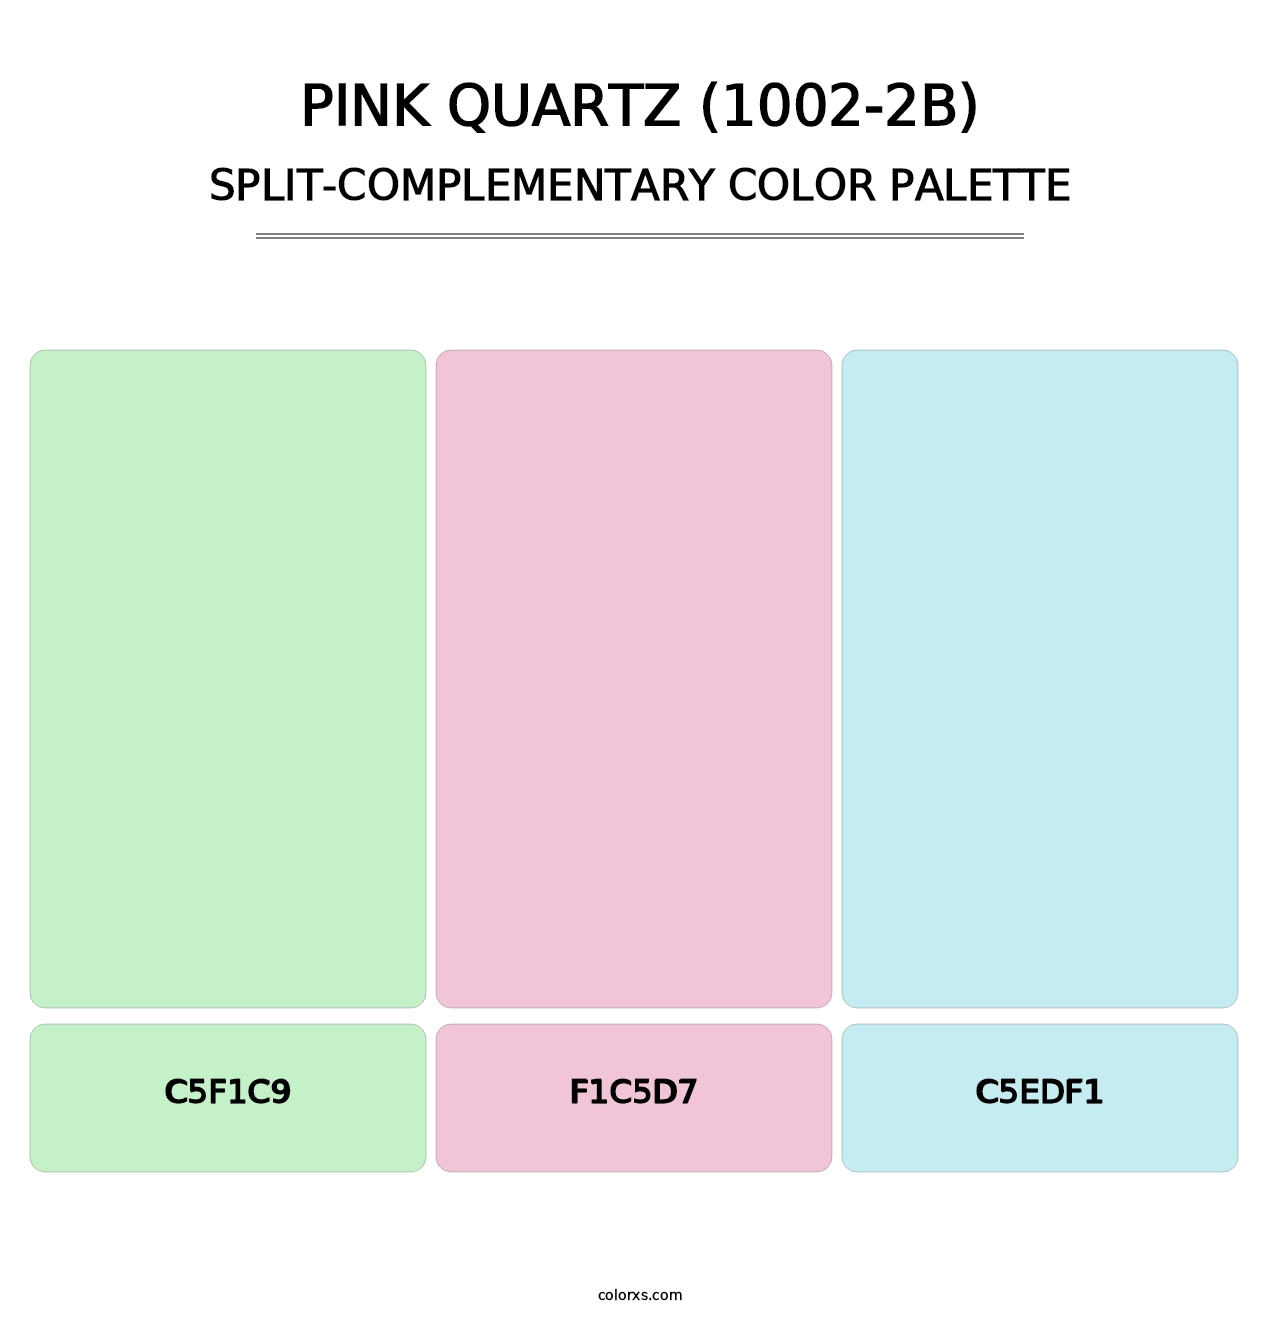 Pink Quartz (1002-2B) - Split-Complementary Color Palette